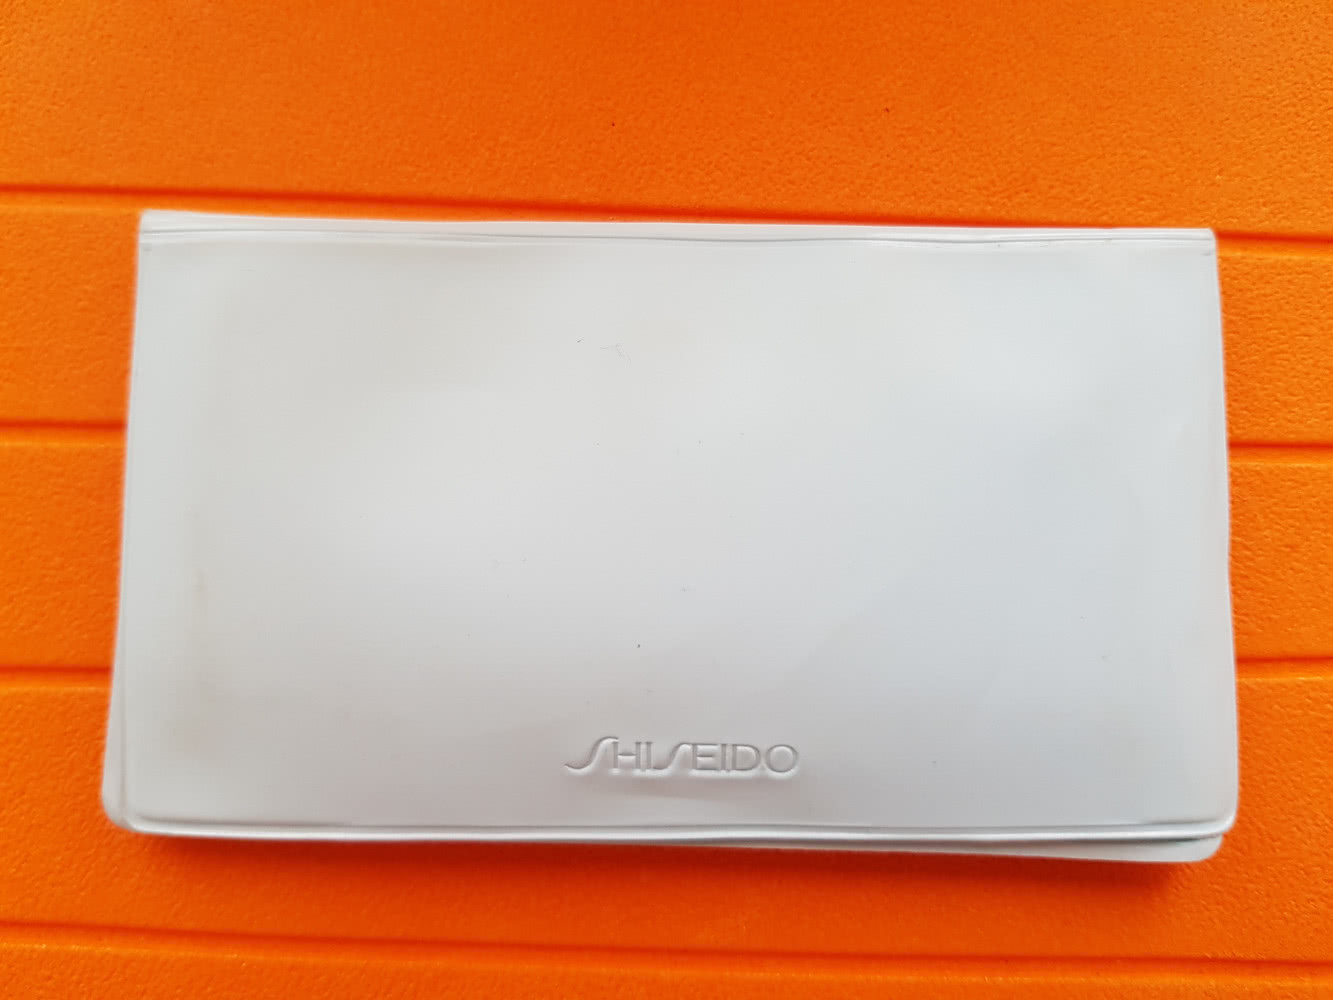 Shiseido Pureness Очищающее средство, в упаковке половина